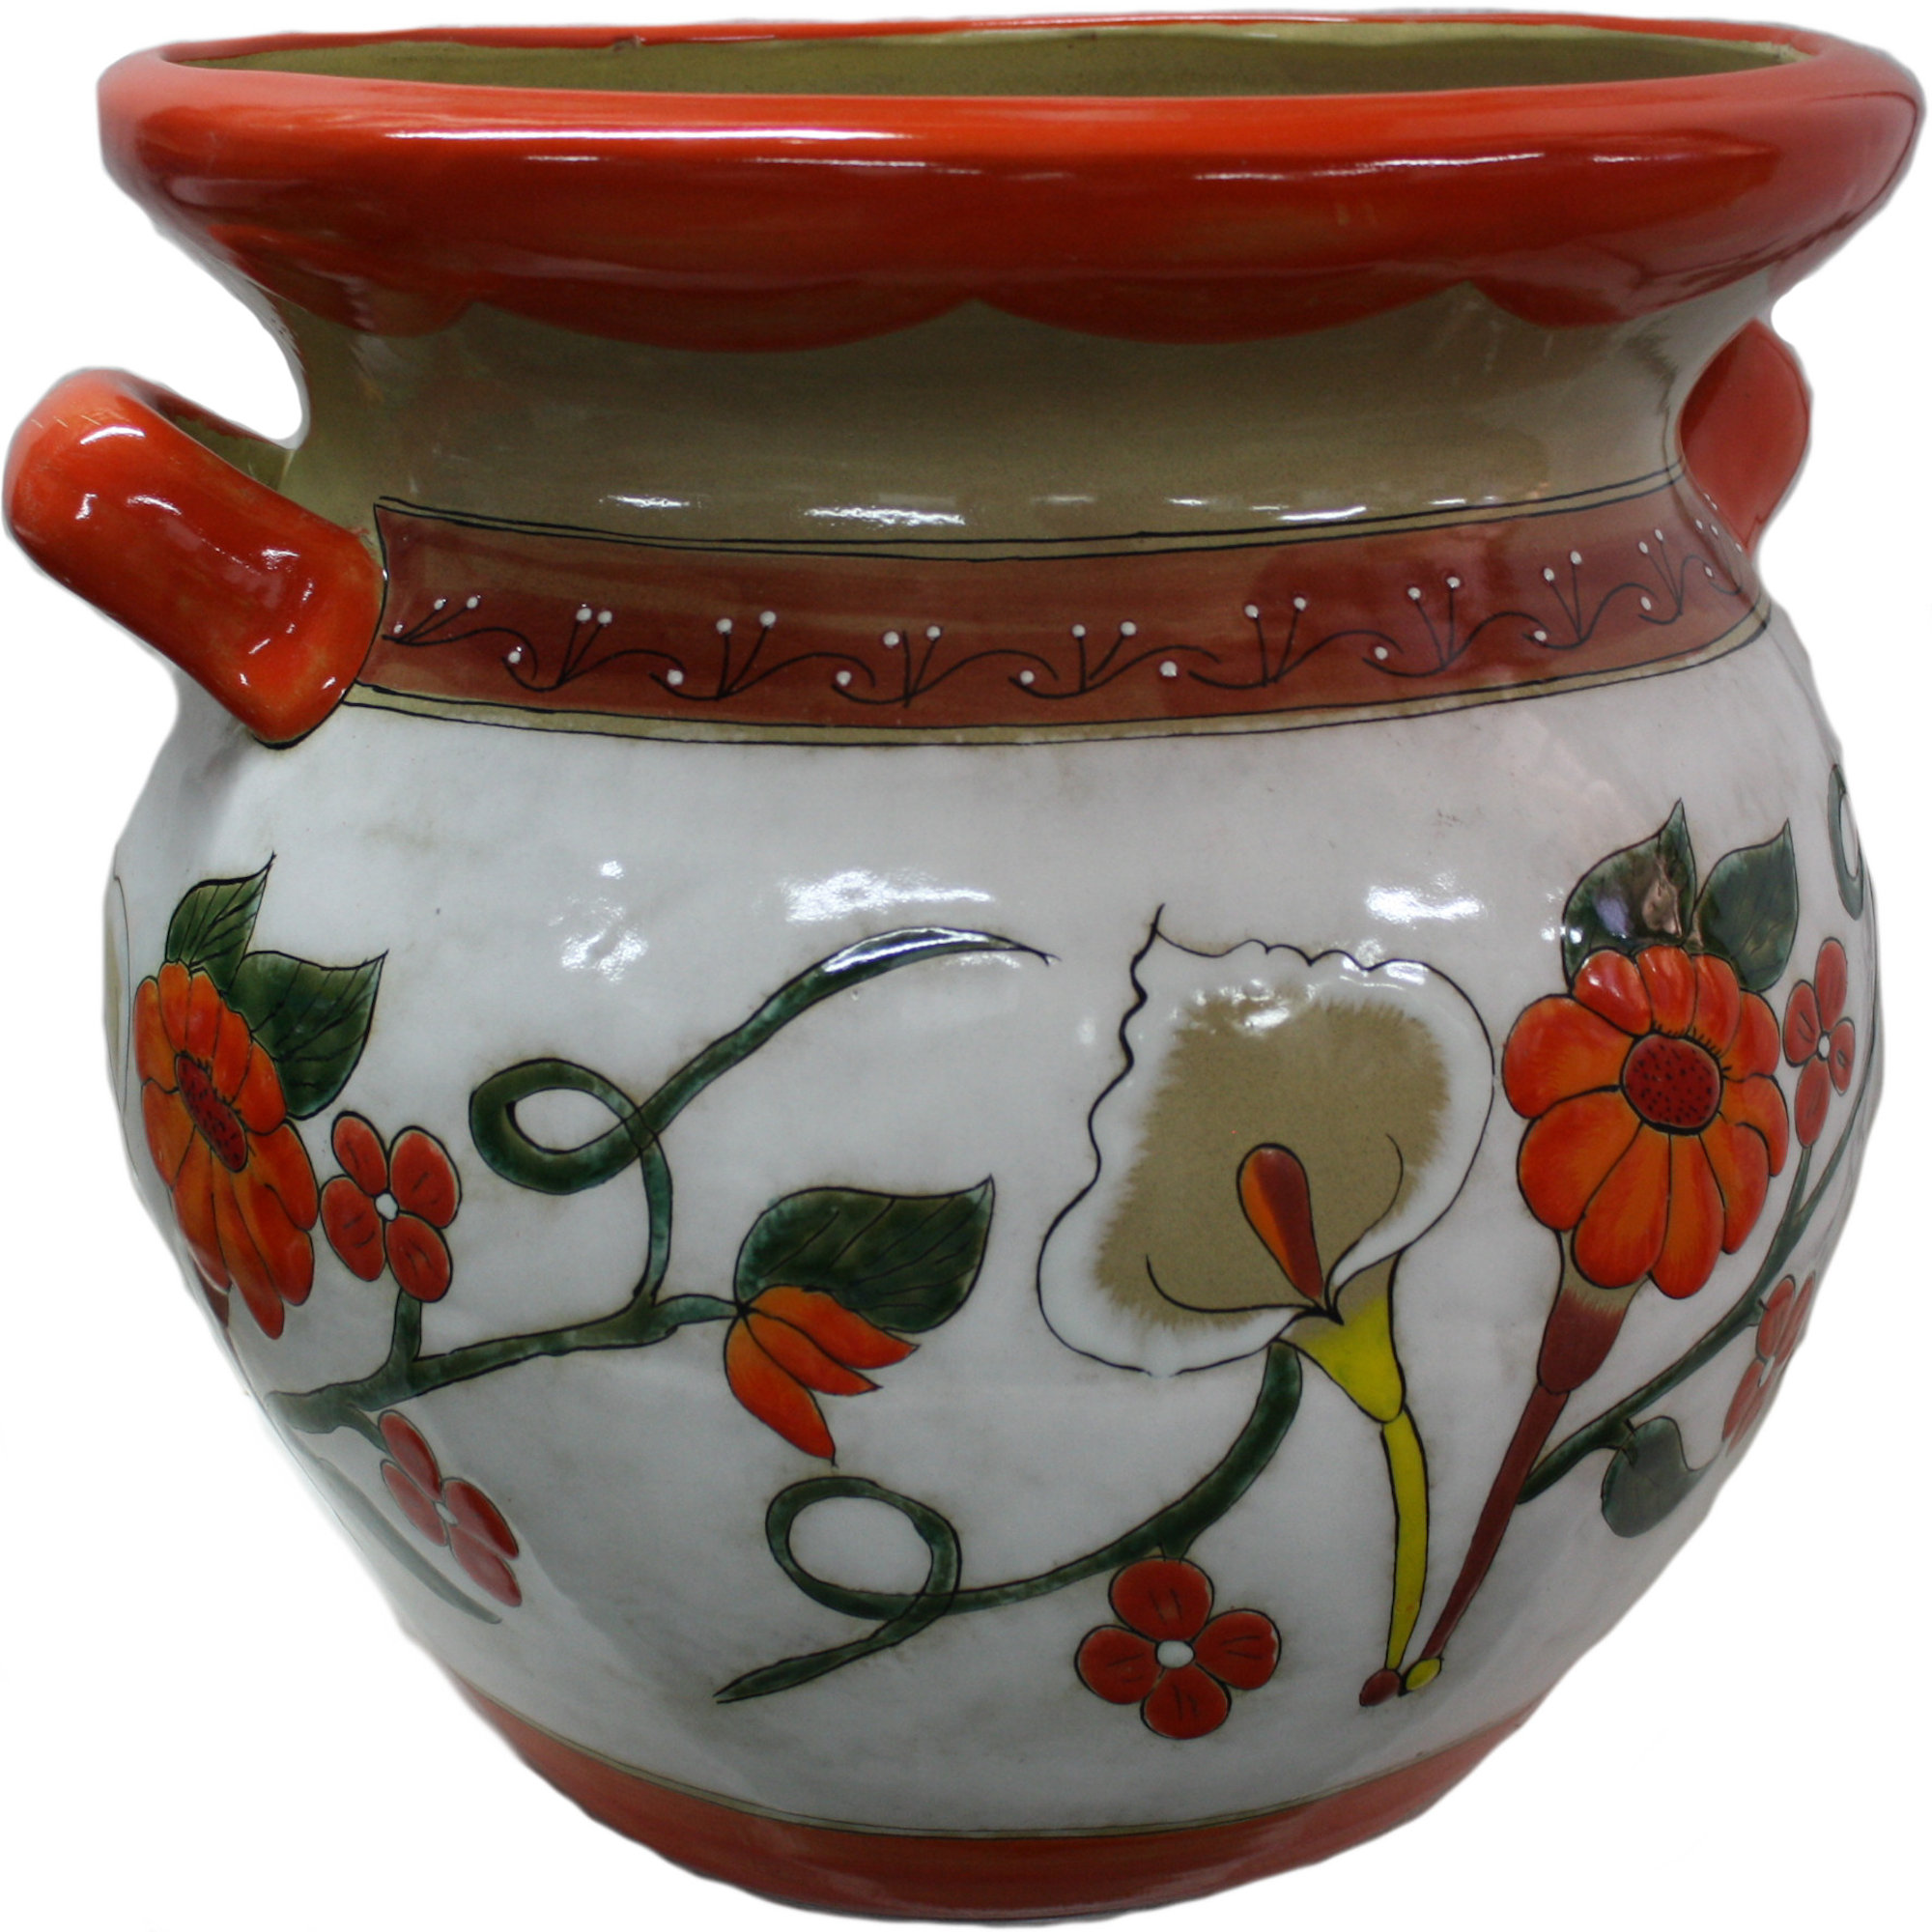 TalaMex Jumbo-Sized Jacona Mexican Colors Talavera Ceramic Garden Pot